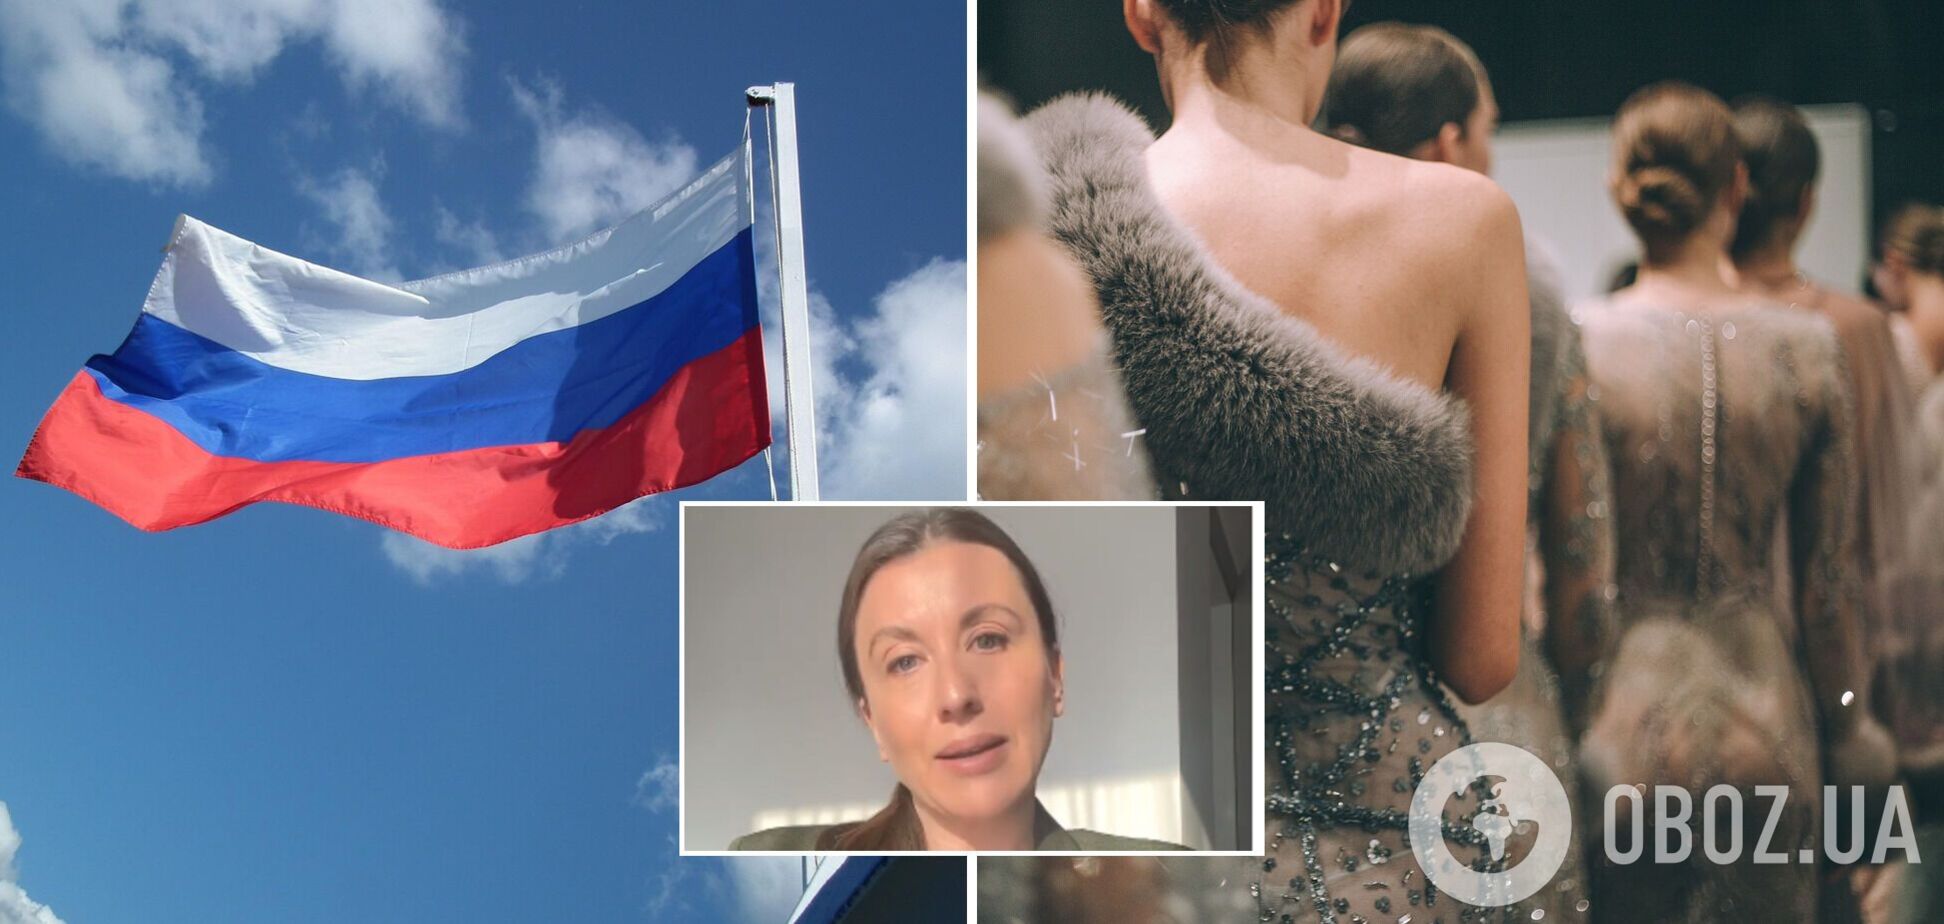 Росію можуть назавжди позбавити права участі у конкурсі Міс Всесвіт